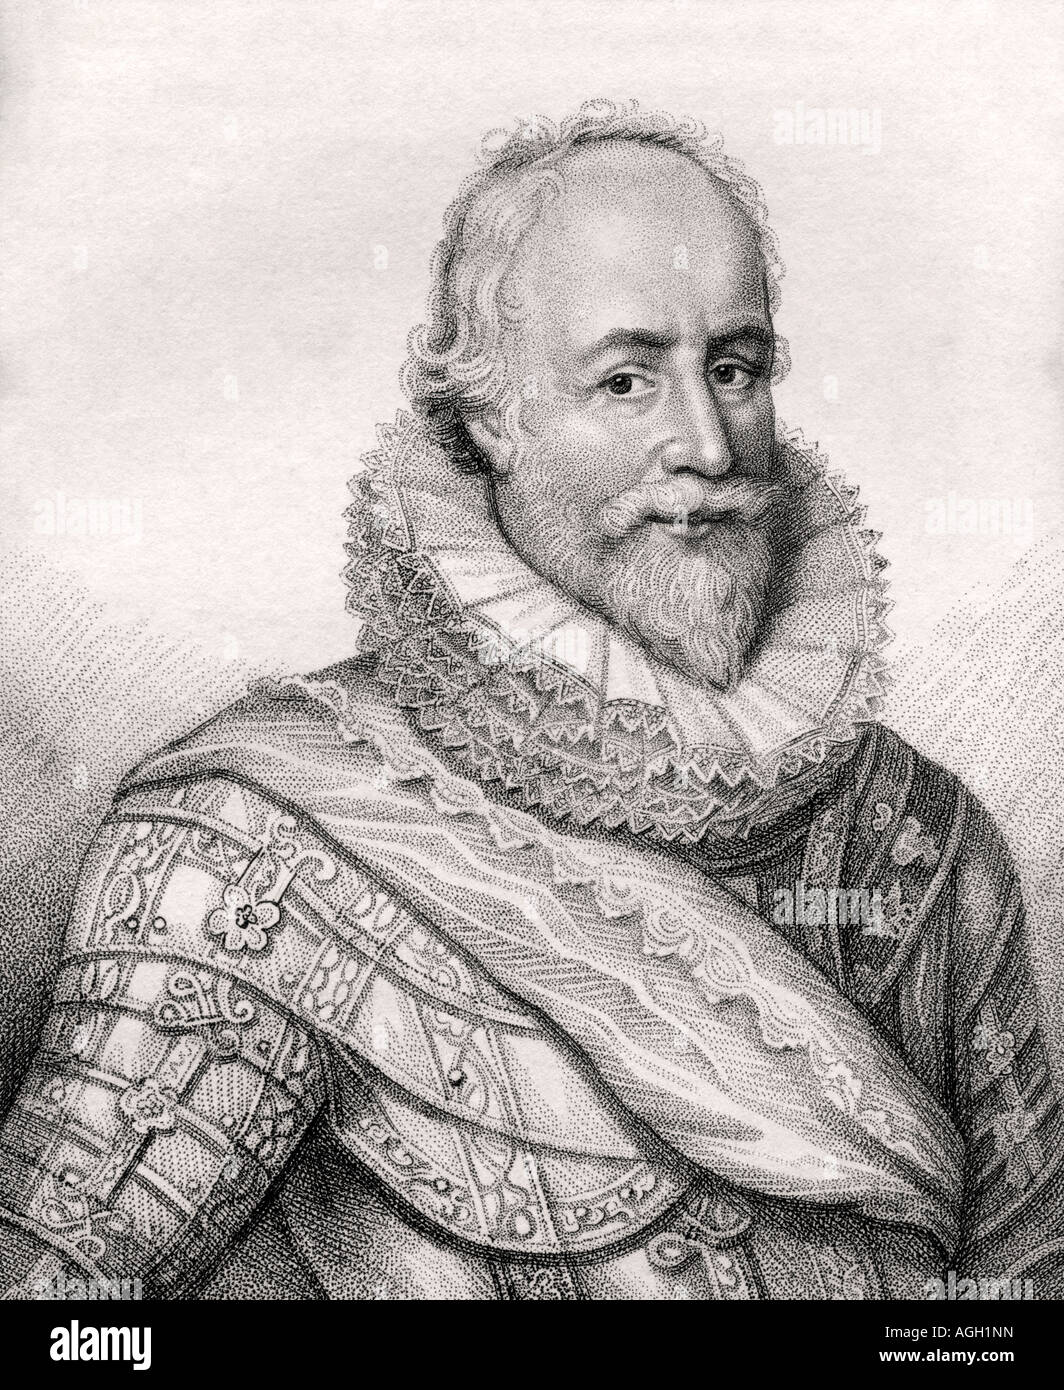 George Carew, 1er comte de Totnes, baron Carew de Clopton, 1555 -1629. Soldat et administrateur anglais. Banque D'Images